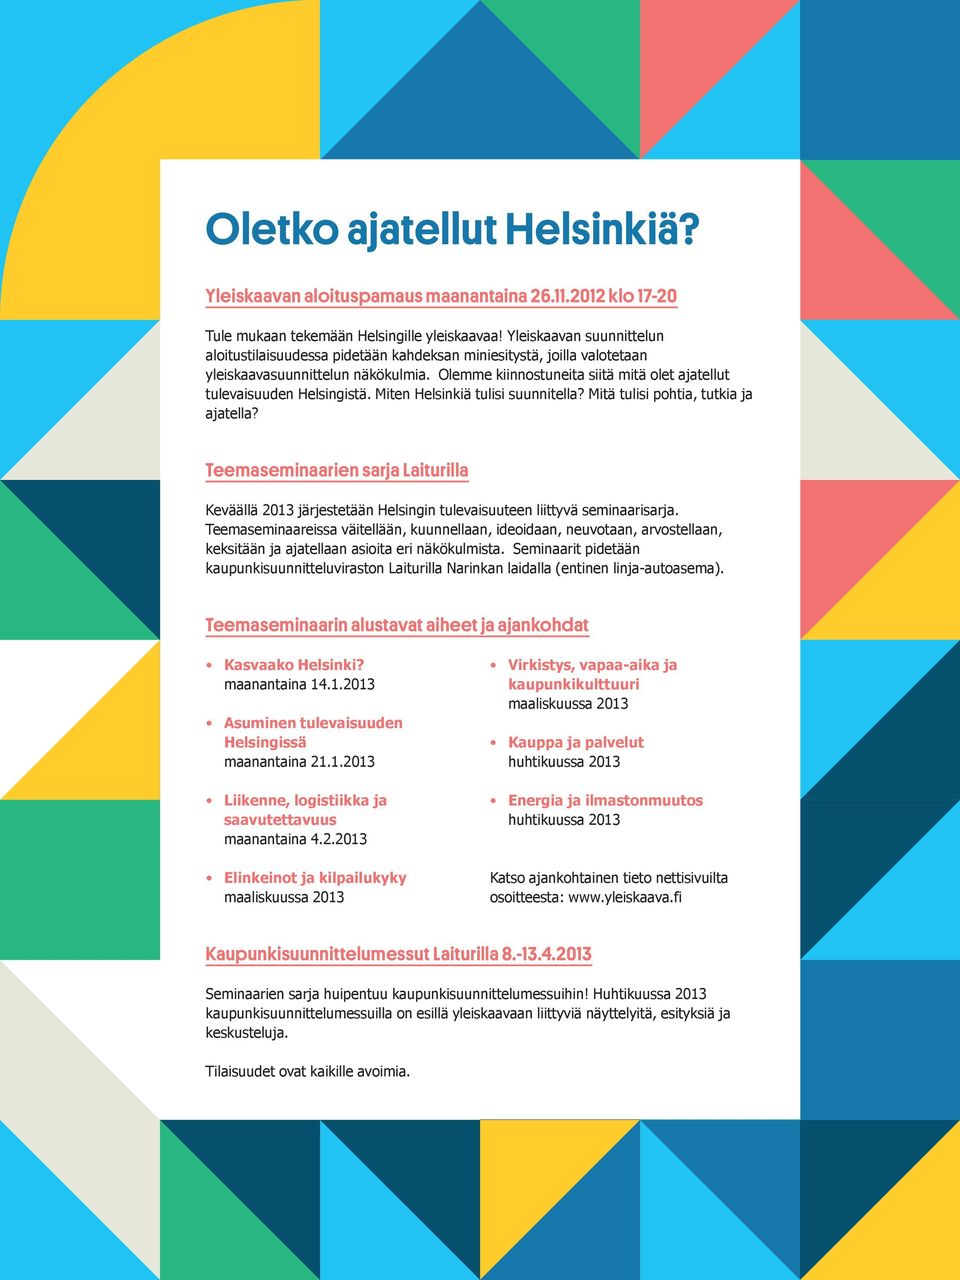 Olemme kiinnostuneita siitä mitä olet ajatellut tulevaisuuden Helsingistä. Miten Helsinkiä tulisi suunnitella? Mitä tulisi pohtia, tutkia ja ajatella?